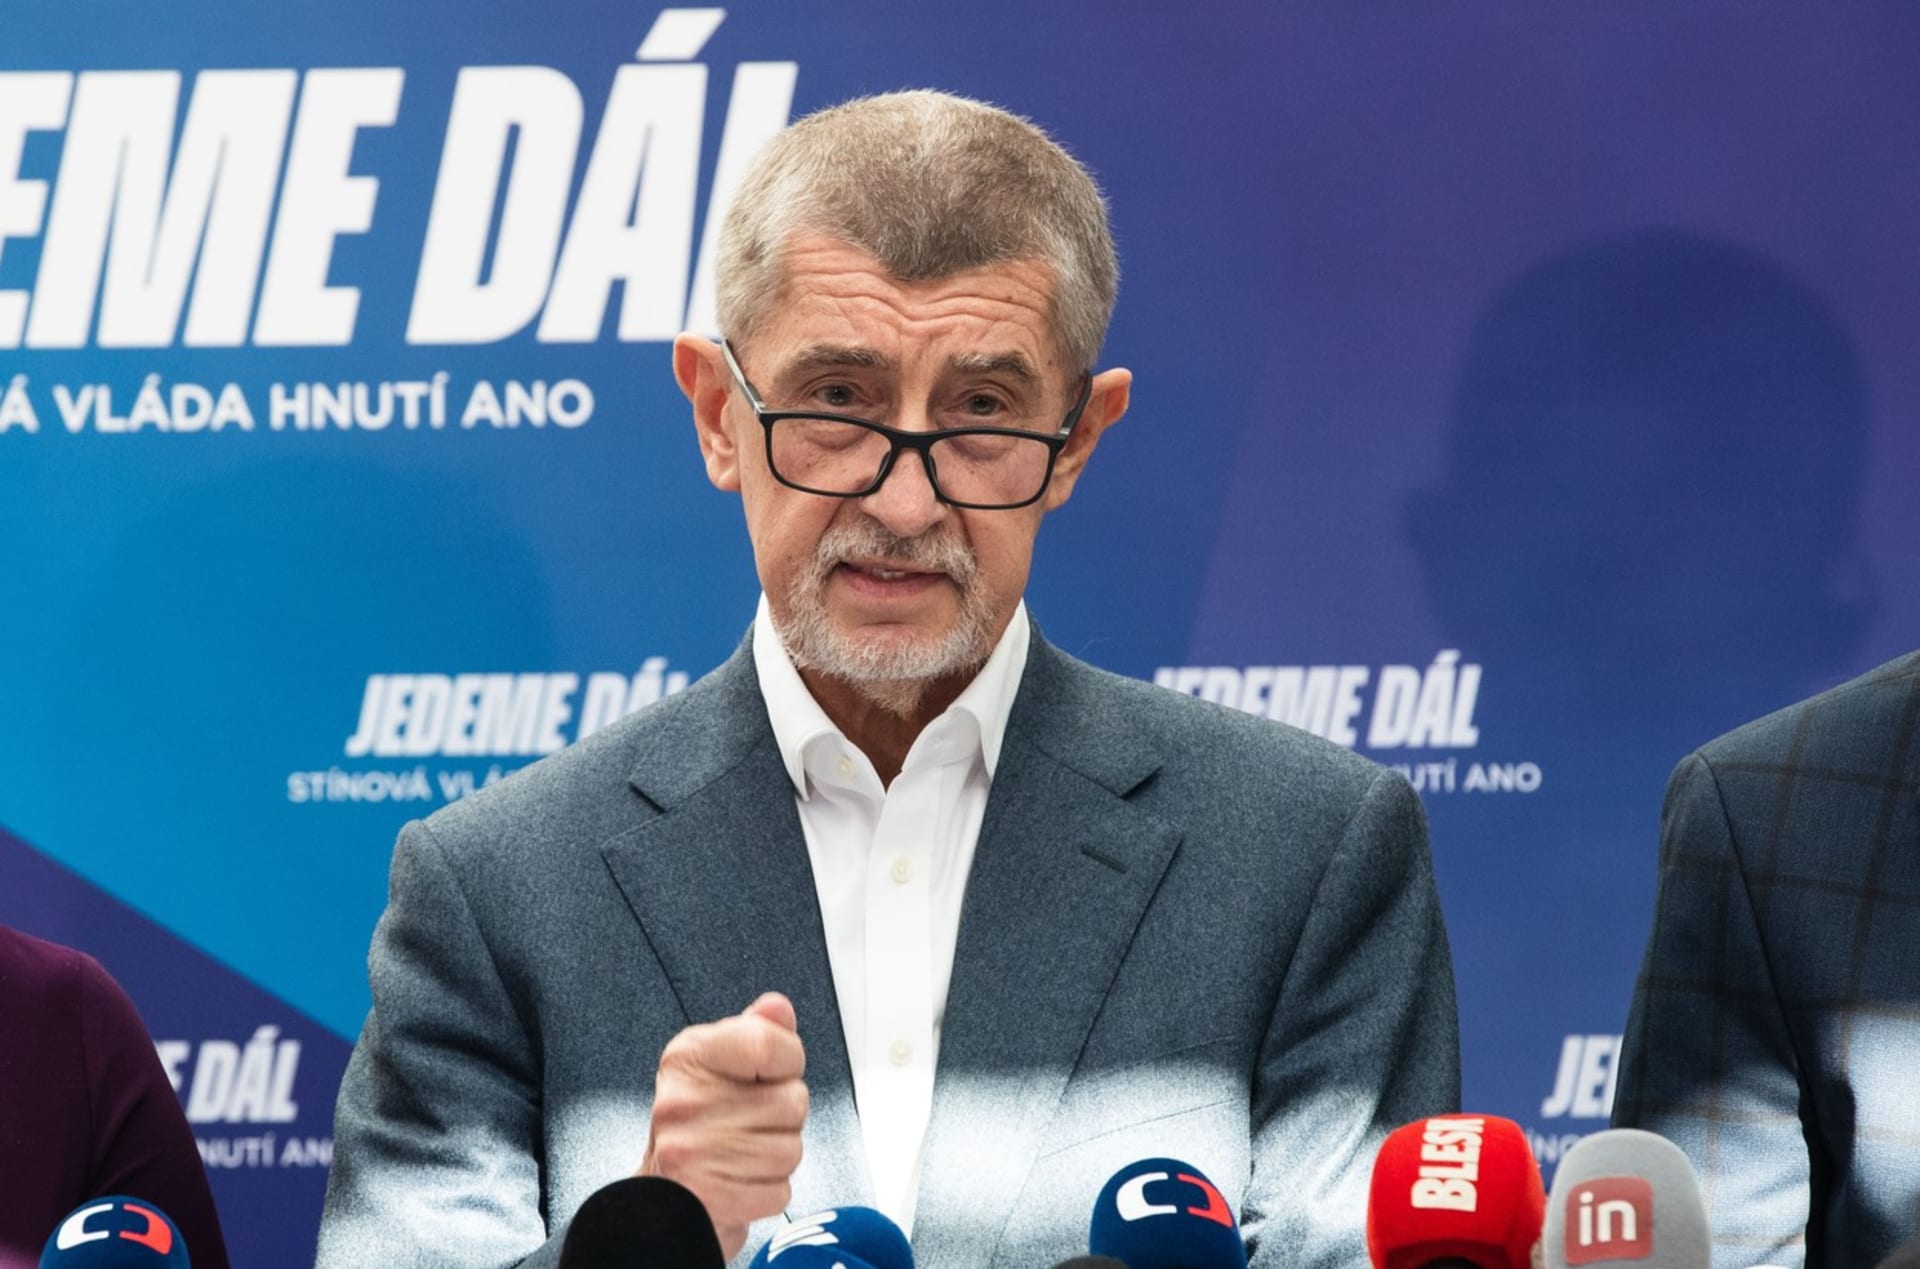 Největší podporu v prezidentských volbách má nadále předseda hnutí ANO Andrej Babiš.